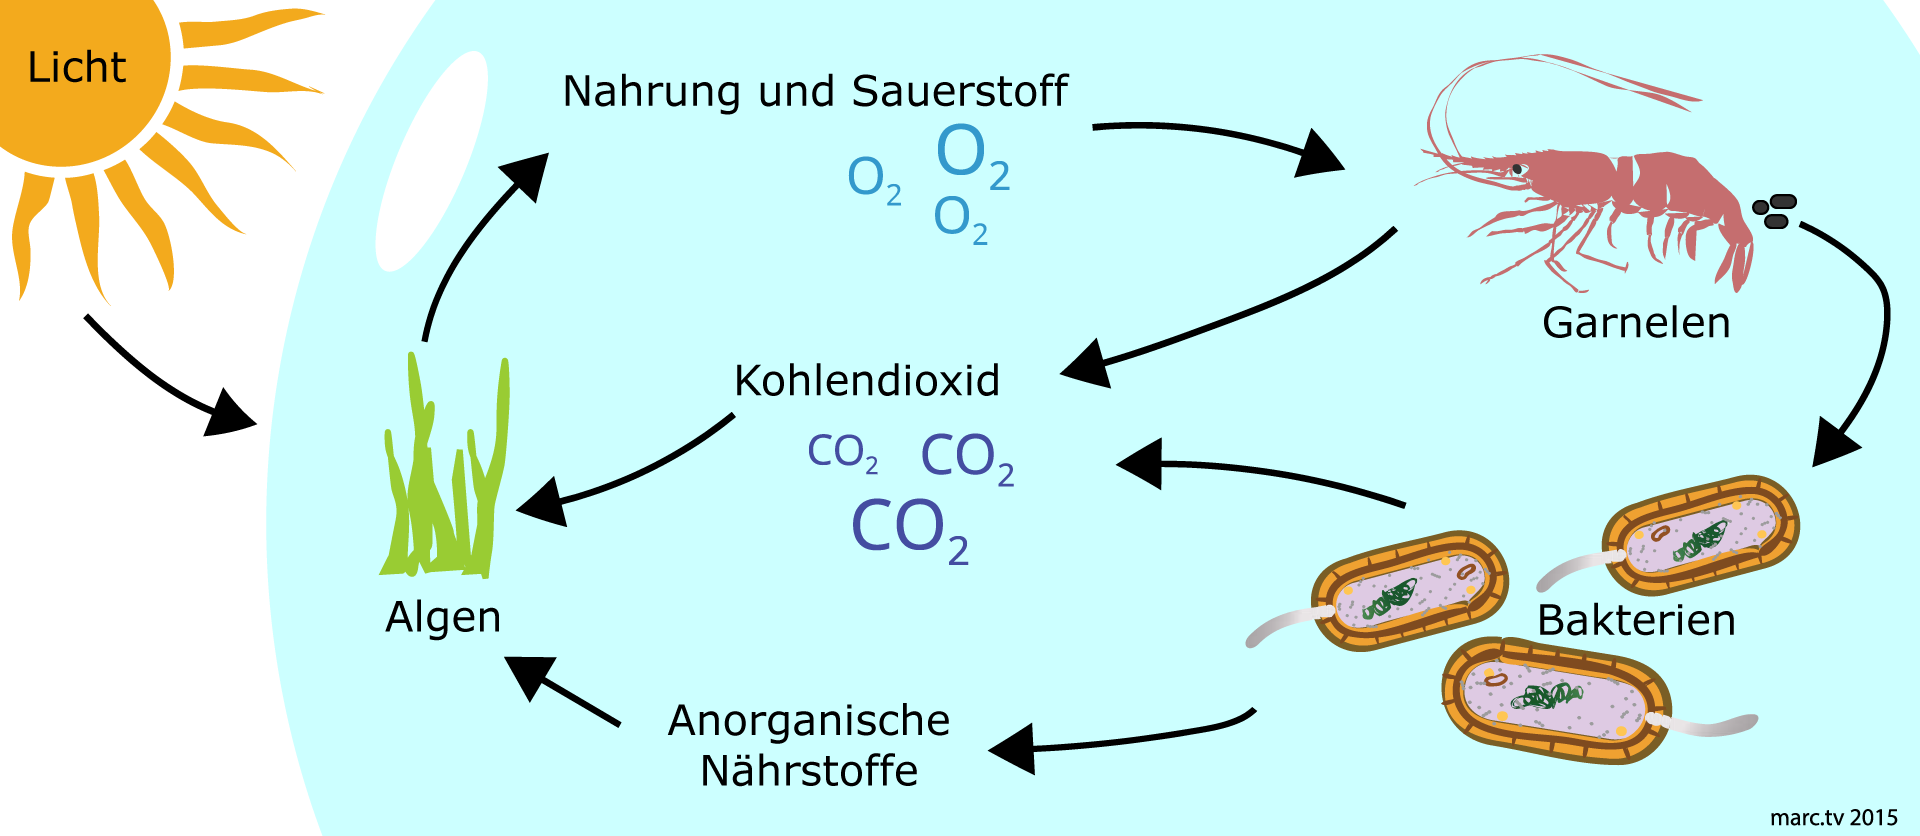 EcoSphere - Wie funktioniert der Kreislauf?